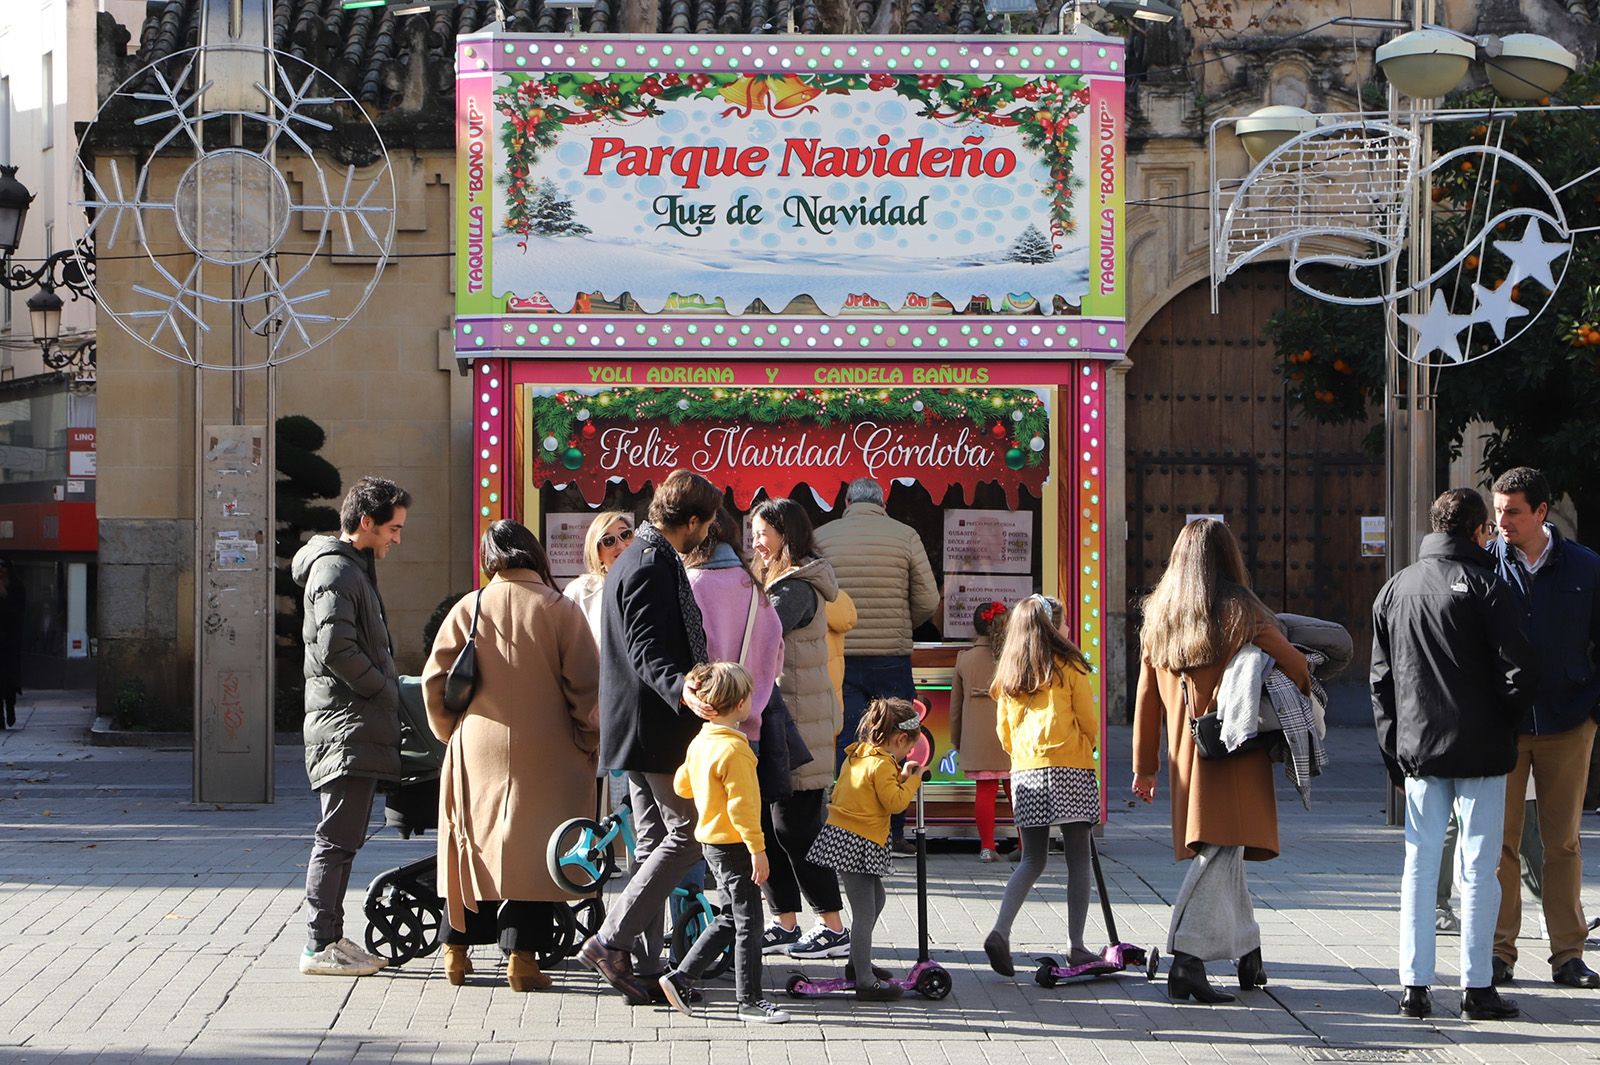 Córdoba pasa de una Nochebuena arrolladora a una Navidad en familia